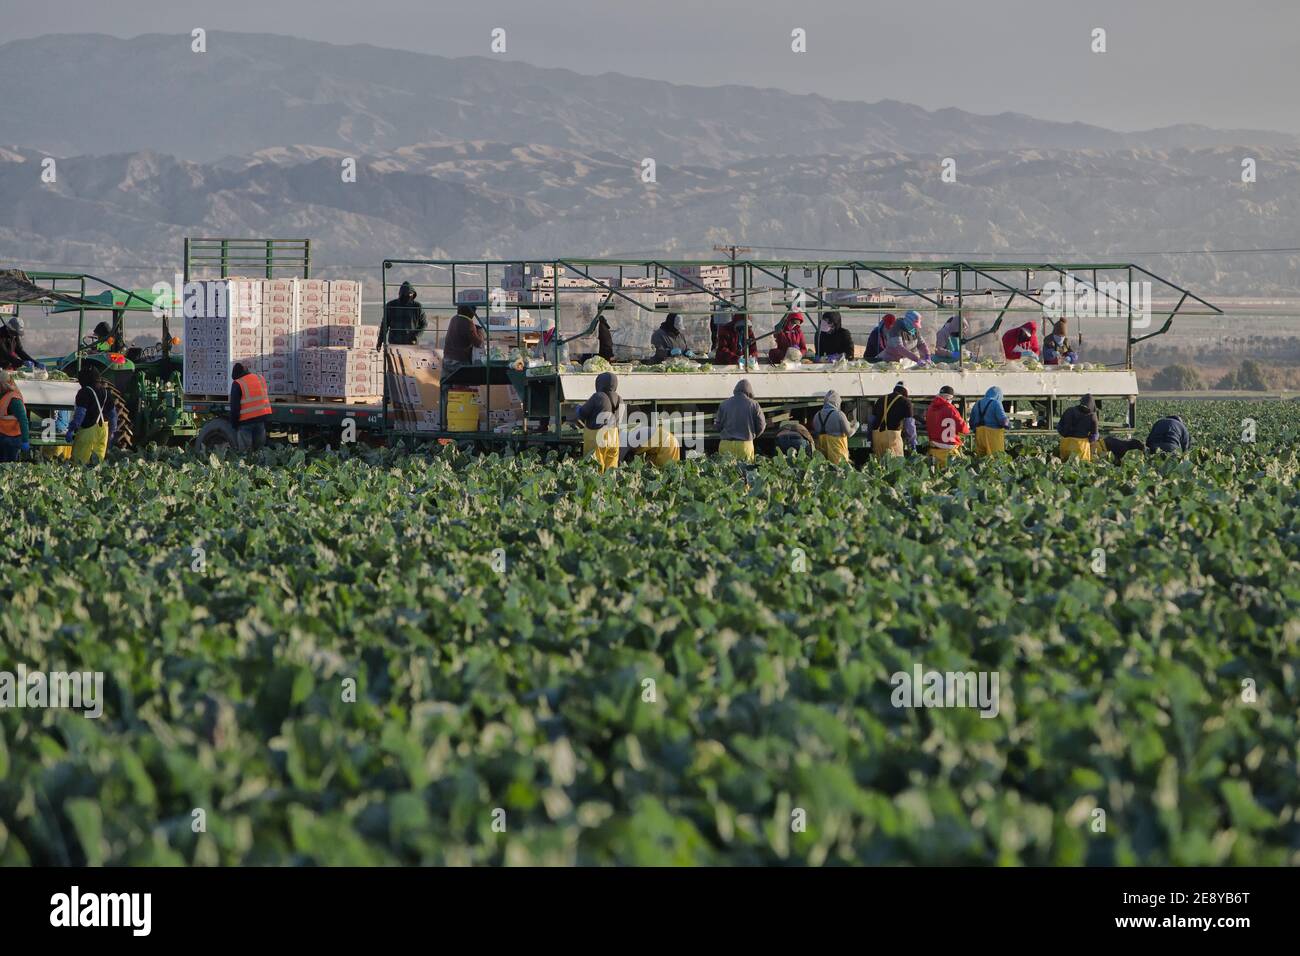 Macchine agricole per la raccolta - imballaggio del cavolfiore organico "Brassica oleracea var. Botrytis", primo mattino leggero, trattore John Deere, California. Foto Stock